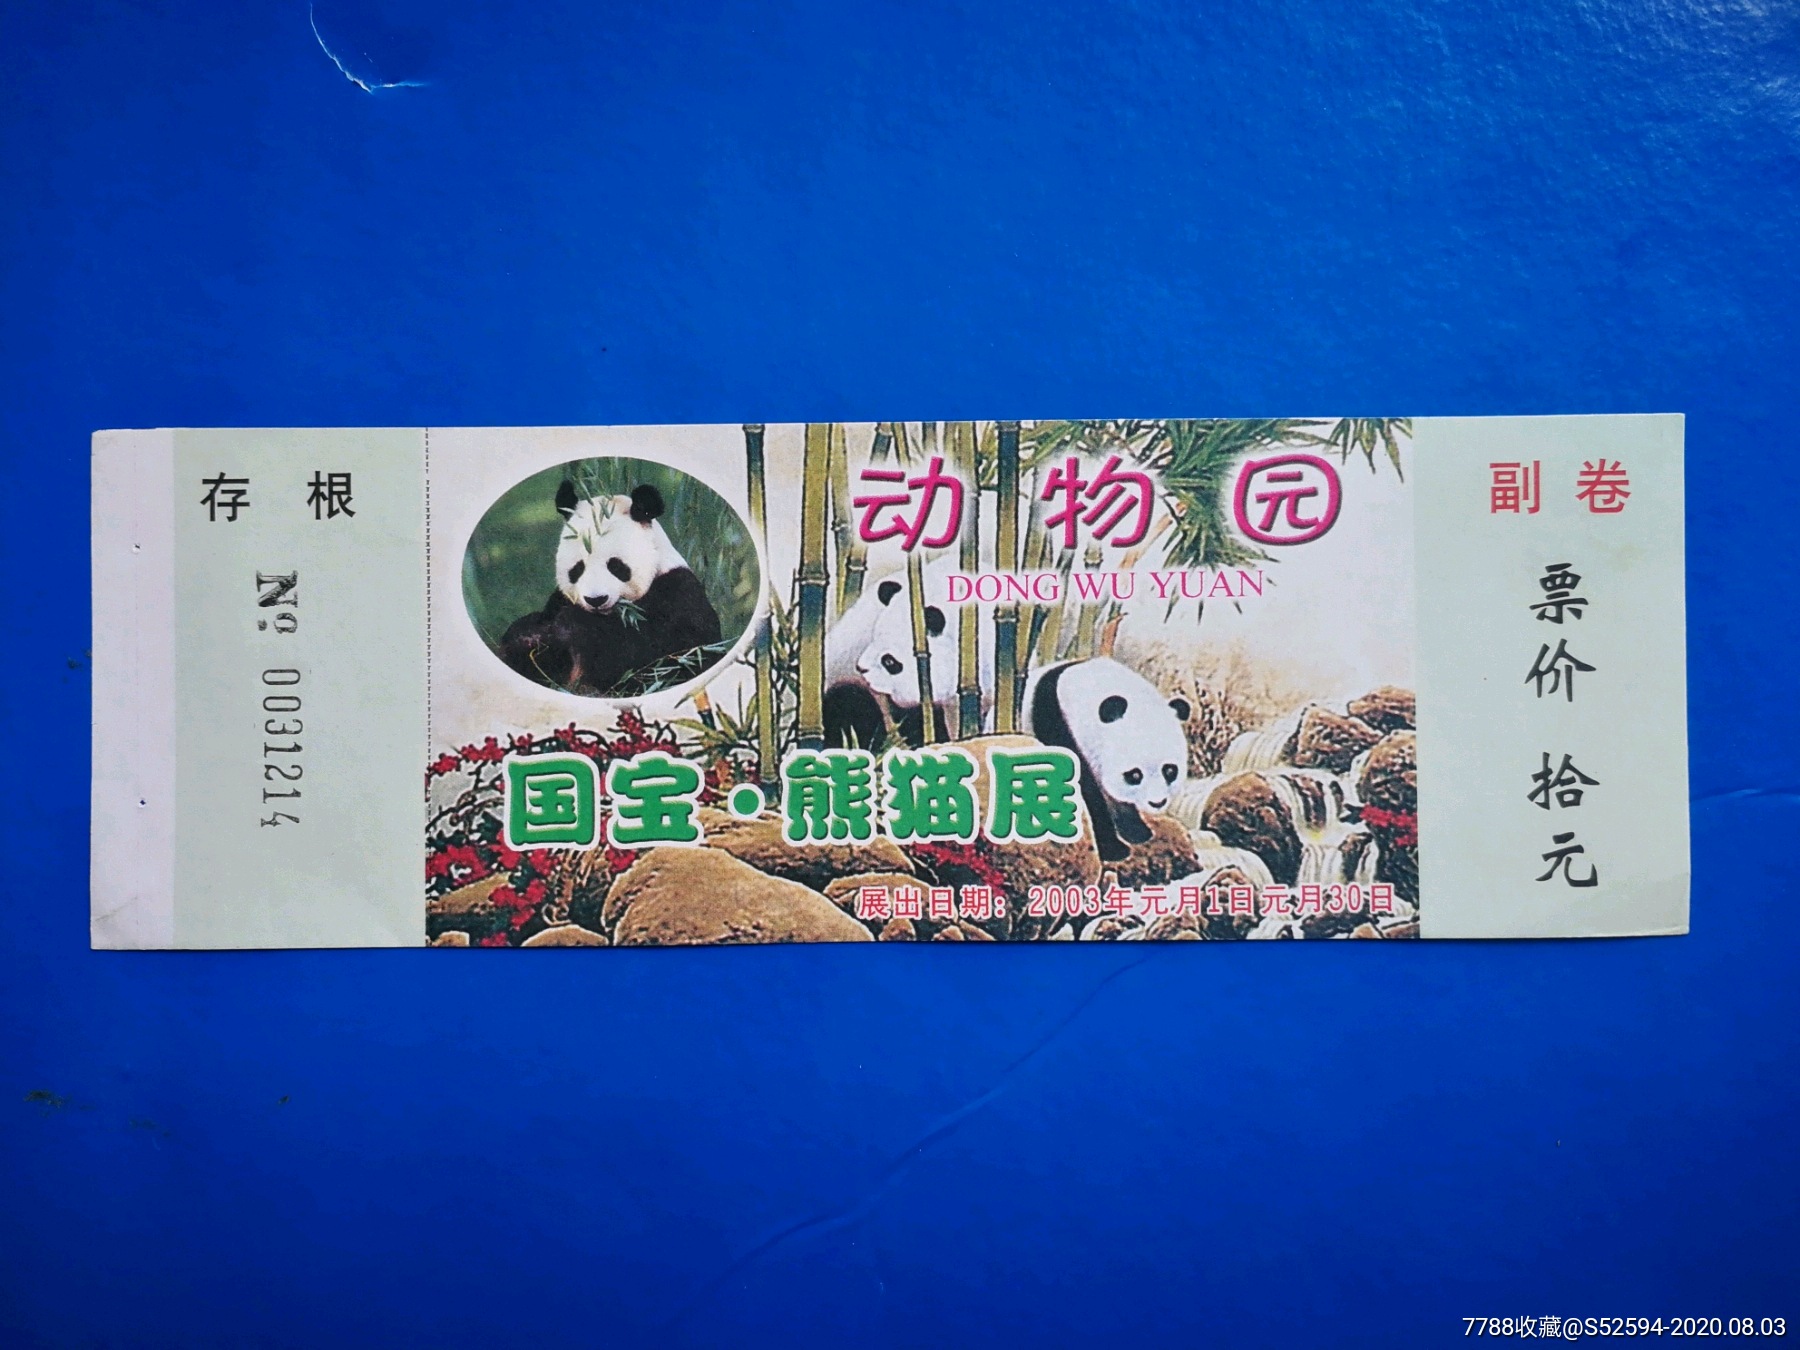 荆州动物园 门票图片